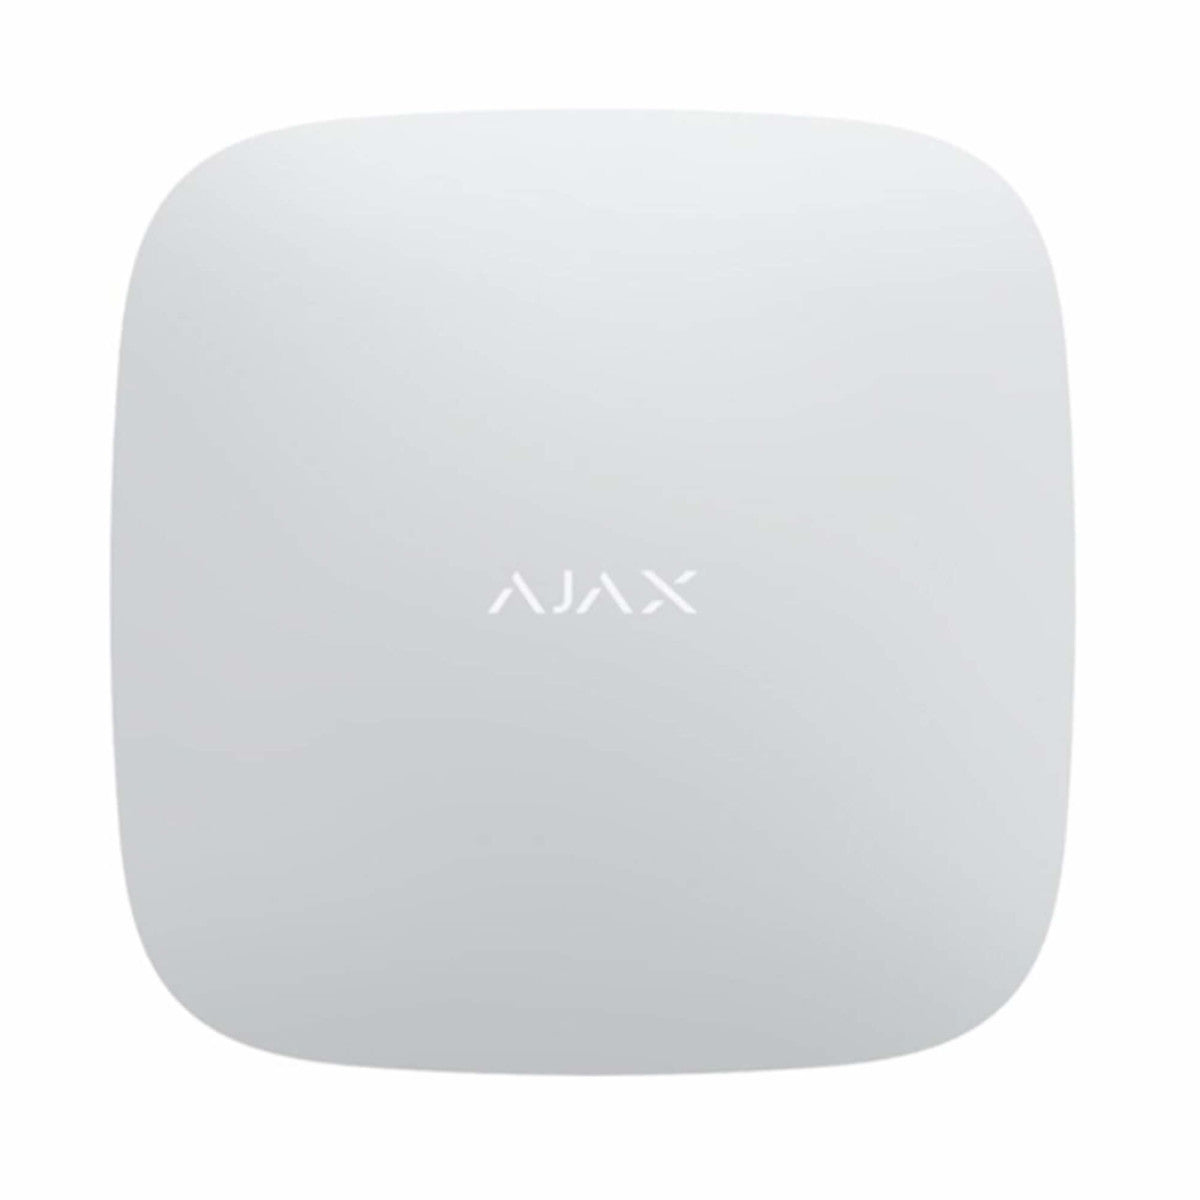 AJAX Verstärker. Verbindung über Funk und Netzwerk -  ReX 2